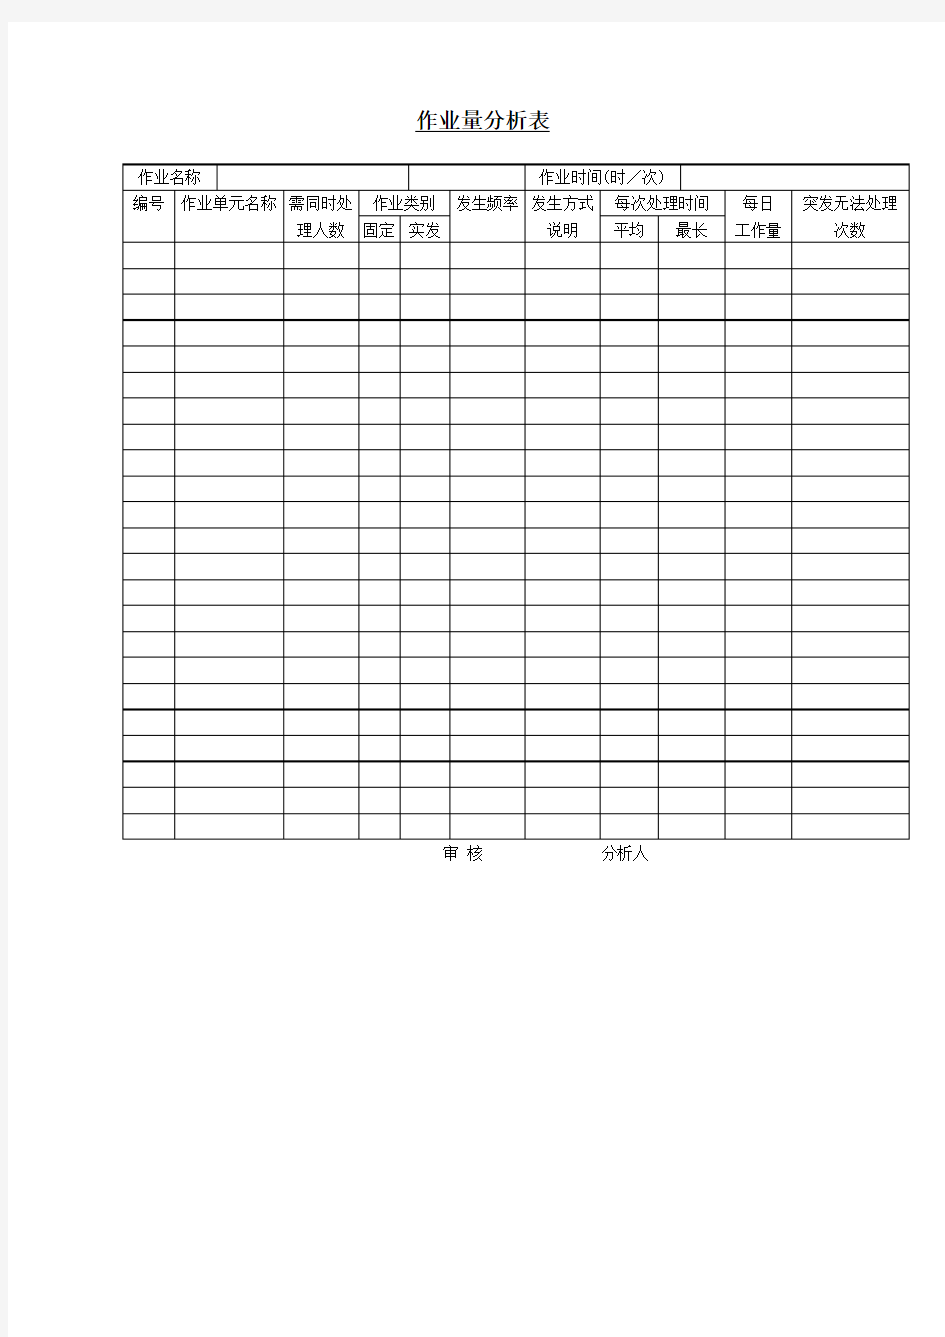 作业量分析表表格格式